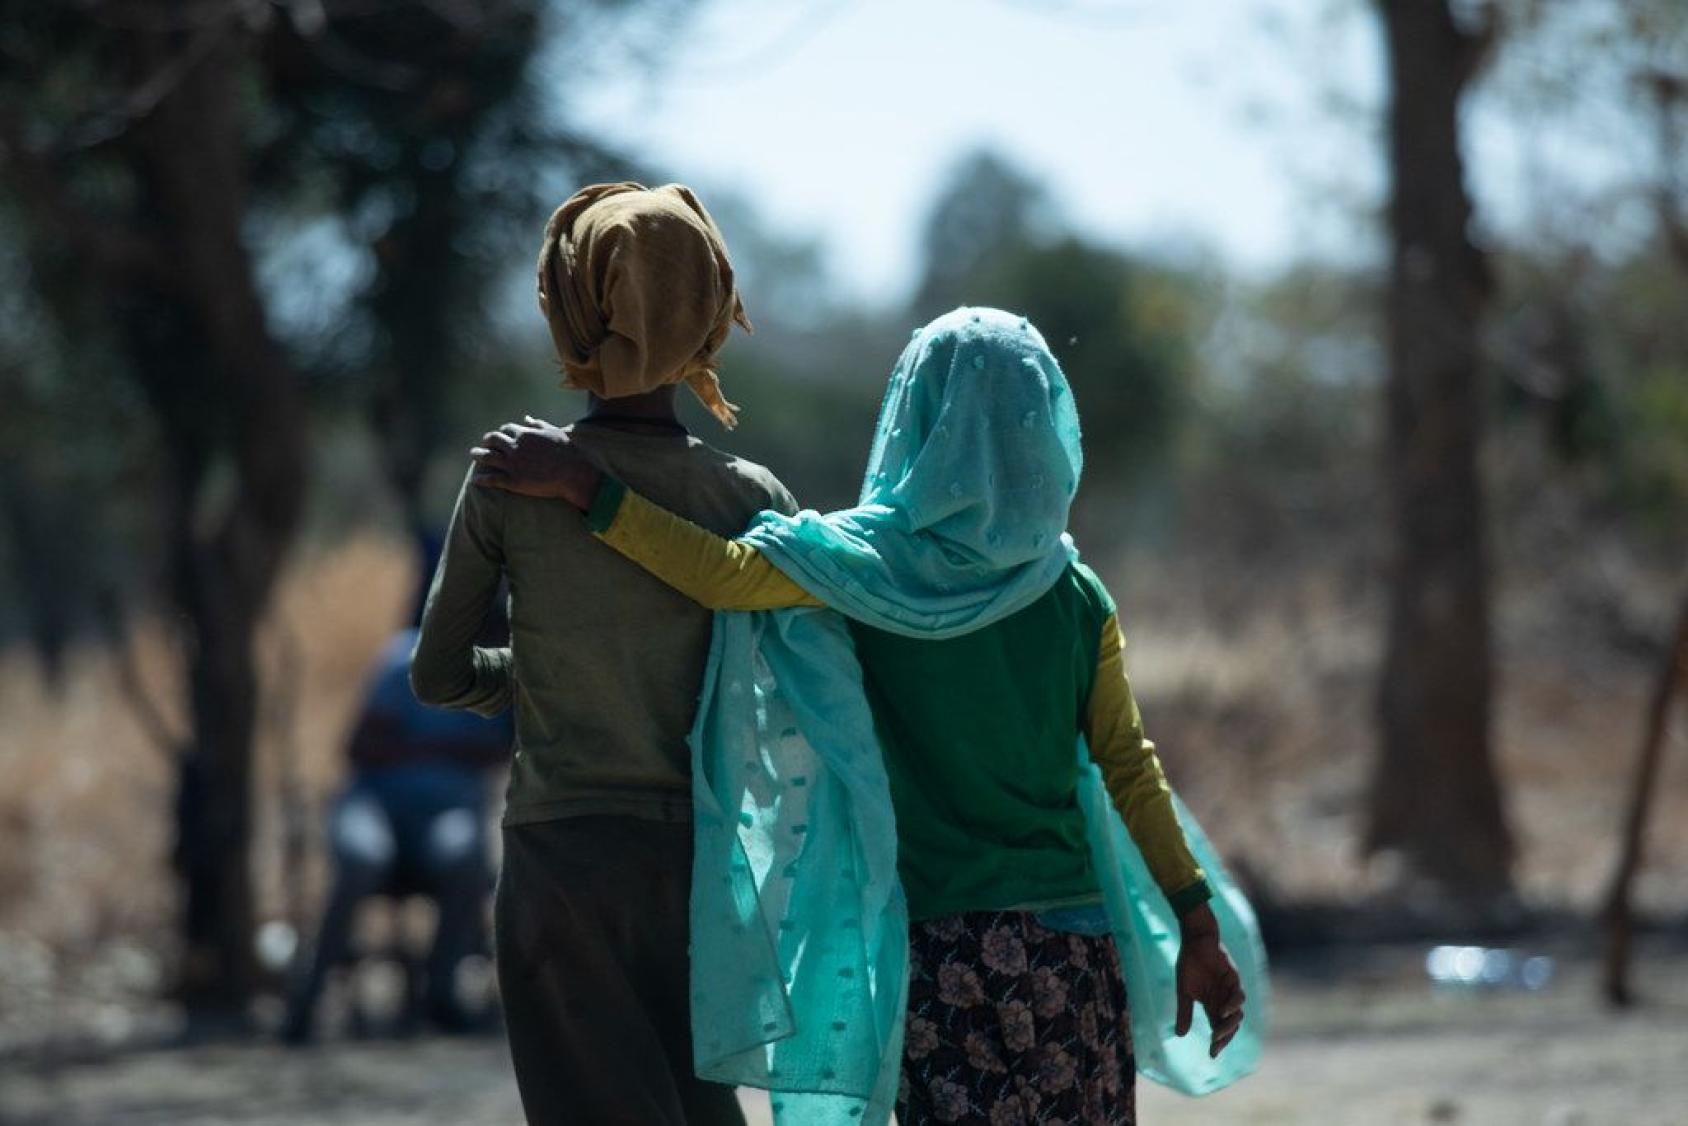 صورة من الخلف لفتاتين ترتديان الحجاب في إثيوبيا وهما تسيران في الشارع.